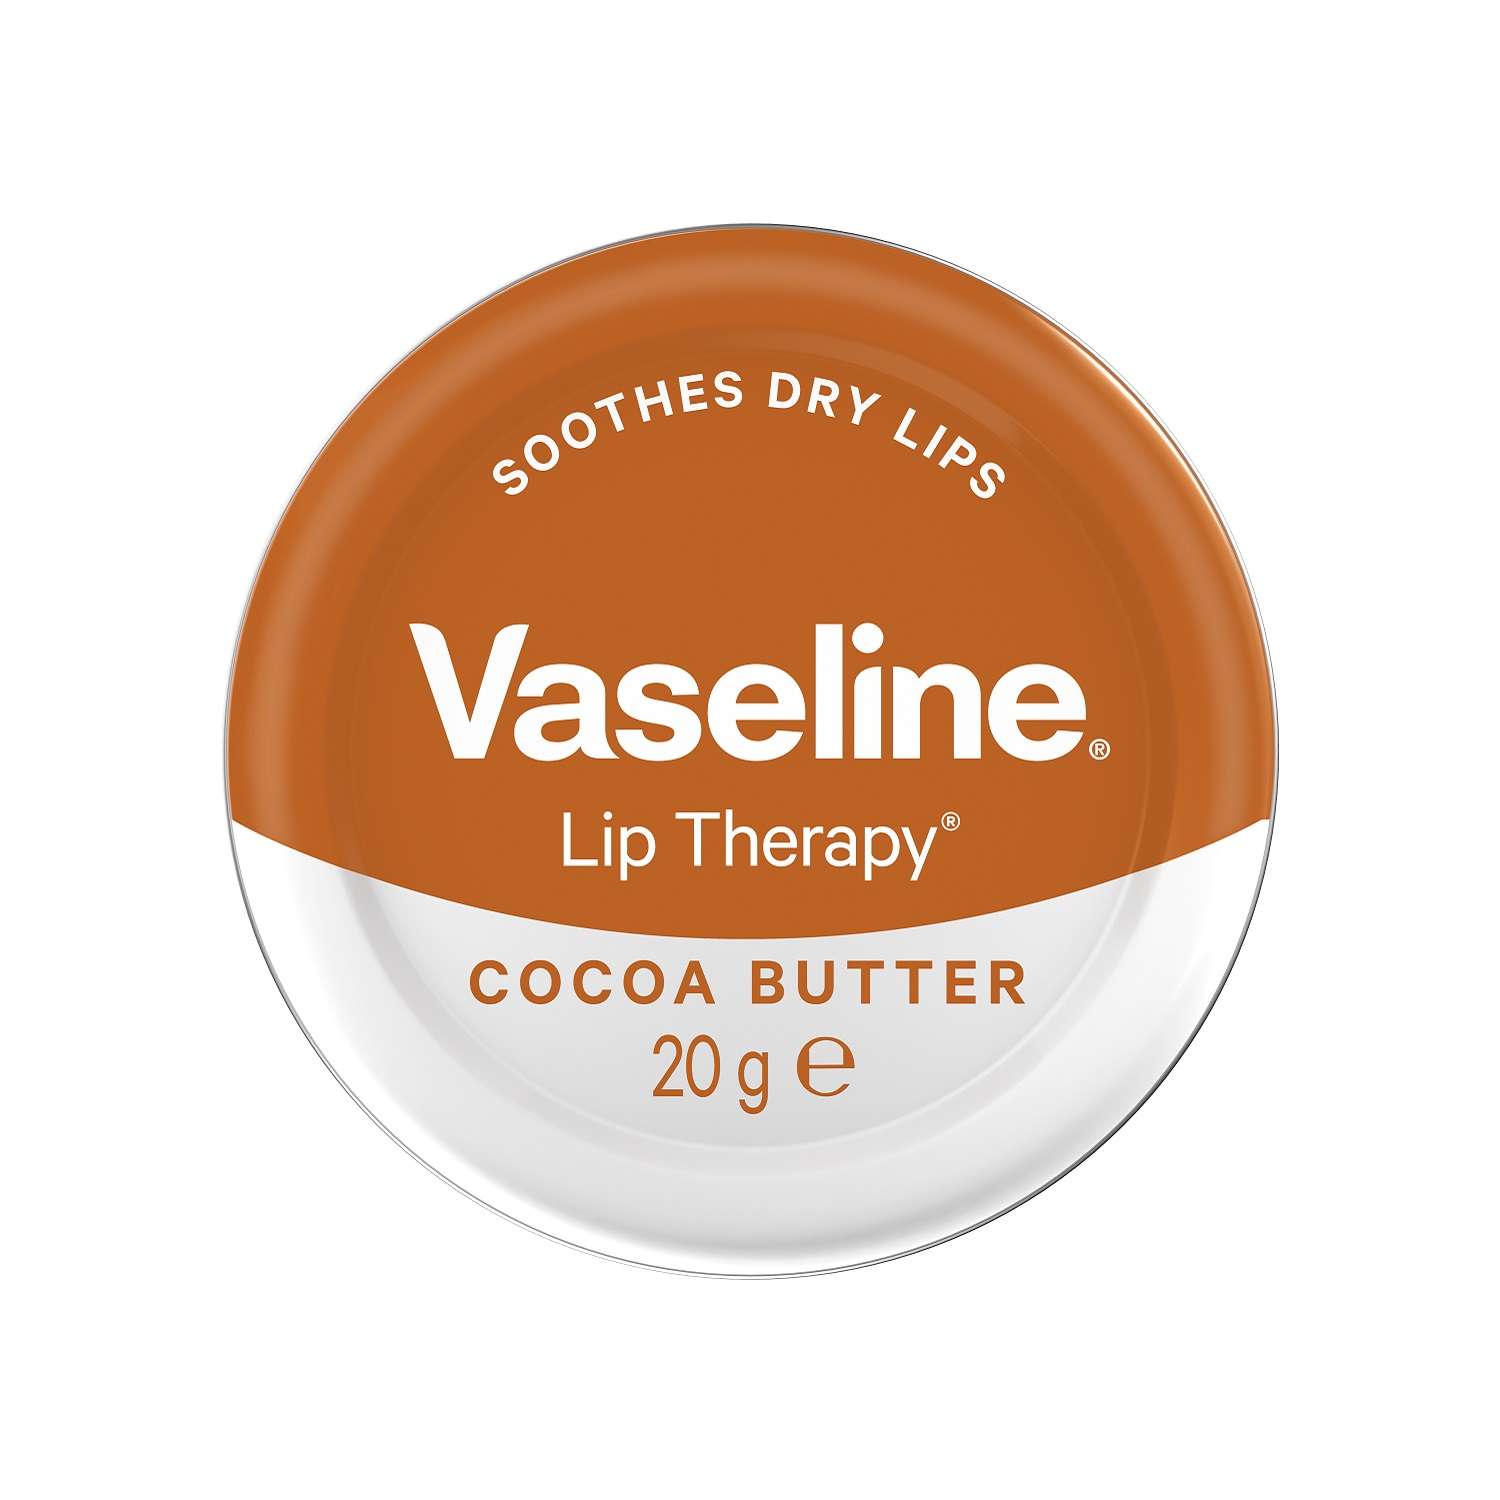 Бальзам для губ Vaseline масло какао 20г - фото 1